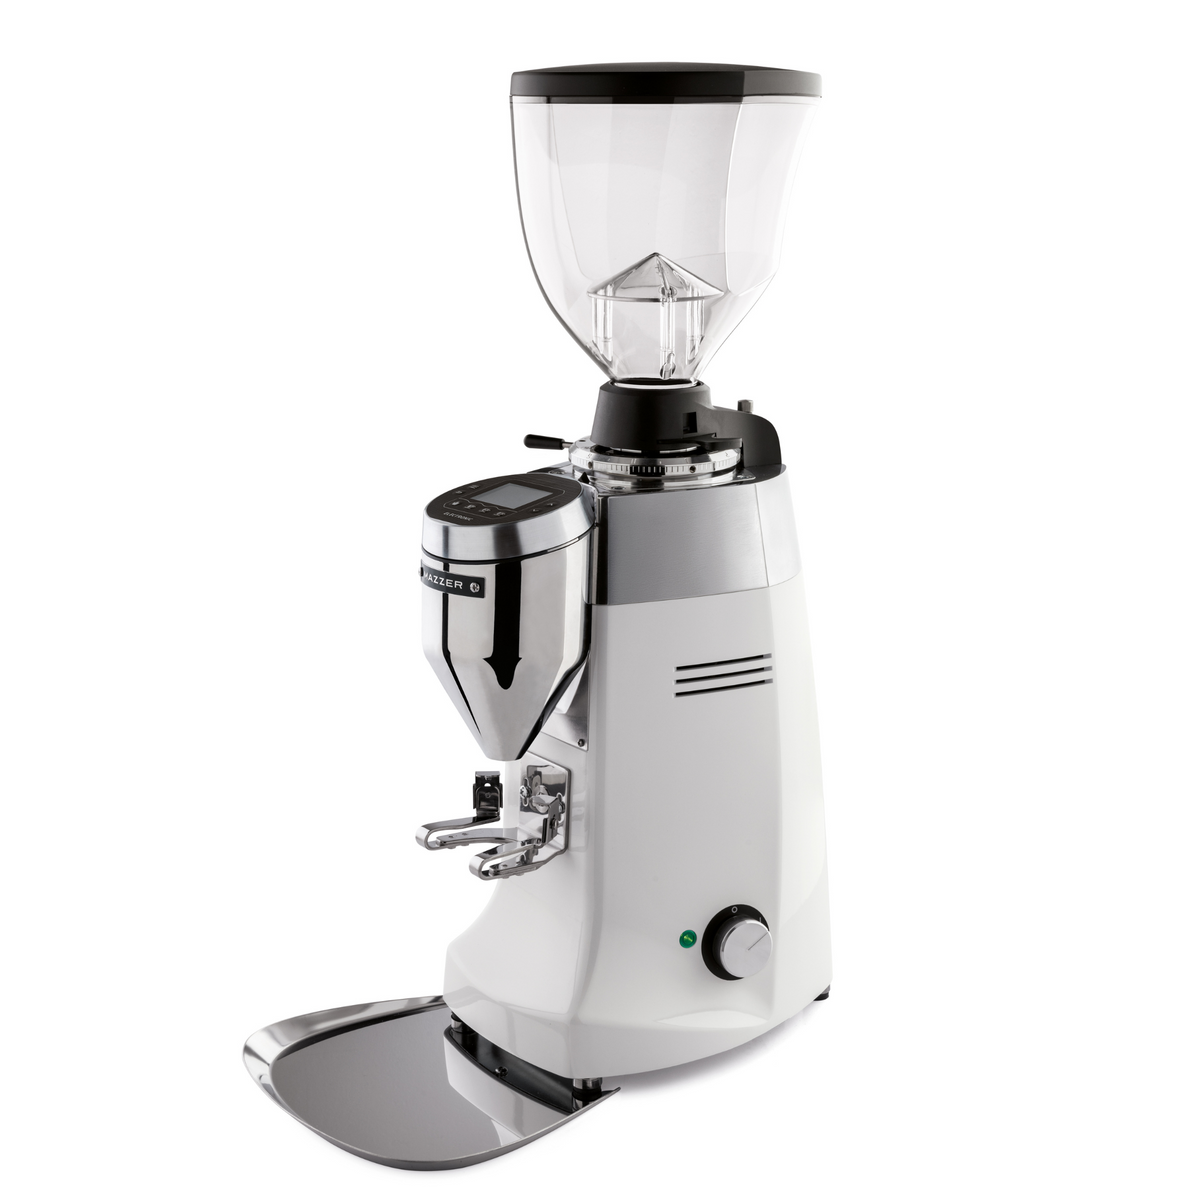 Mazzer Robur S 電子商用濃縮咖啡研磨機